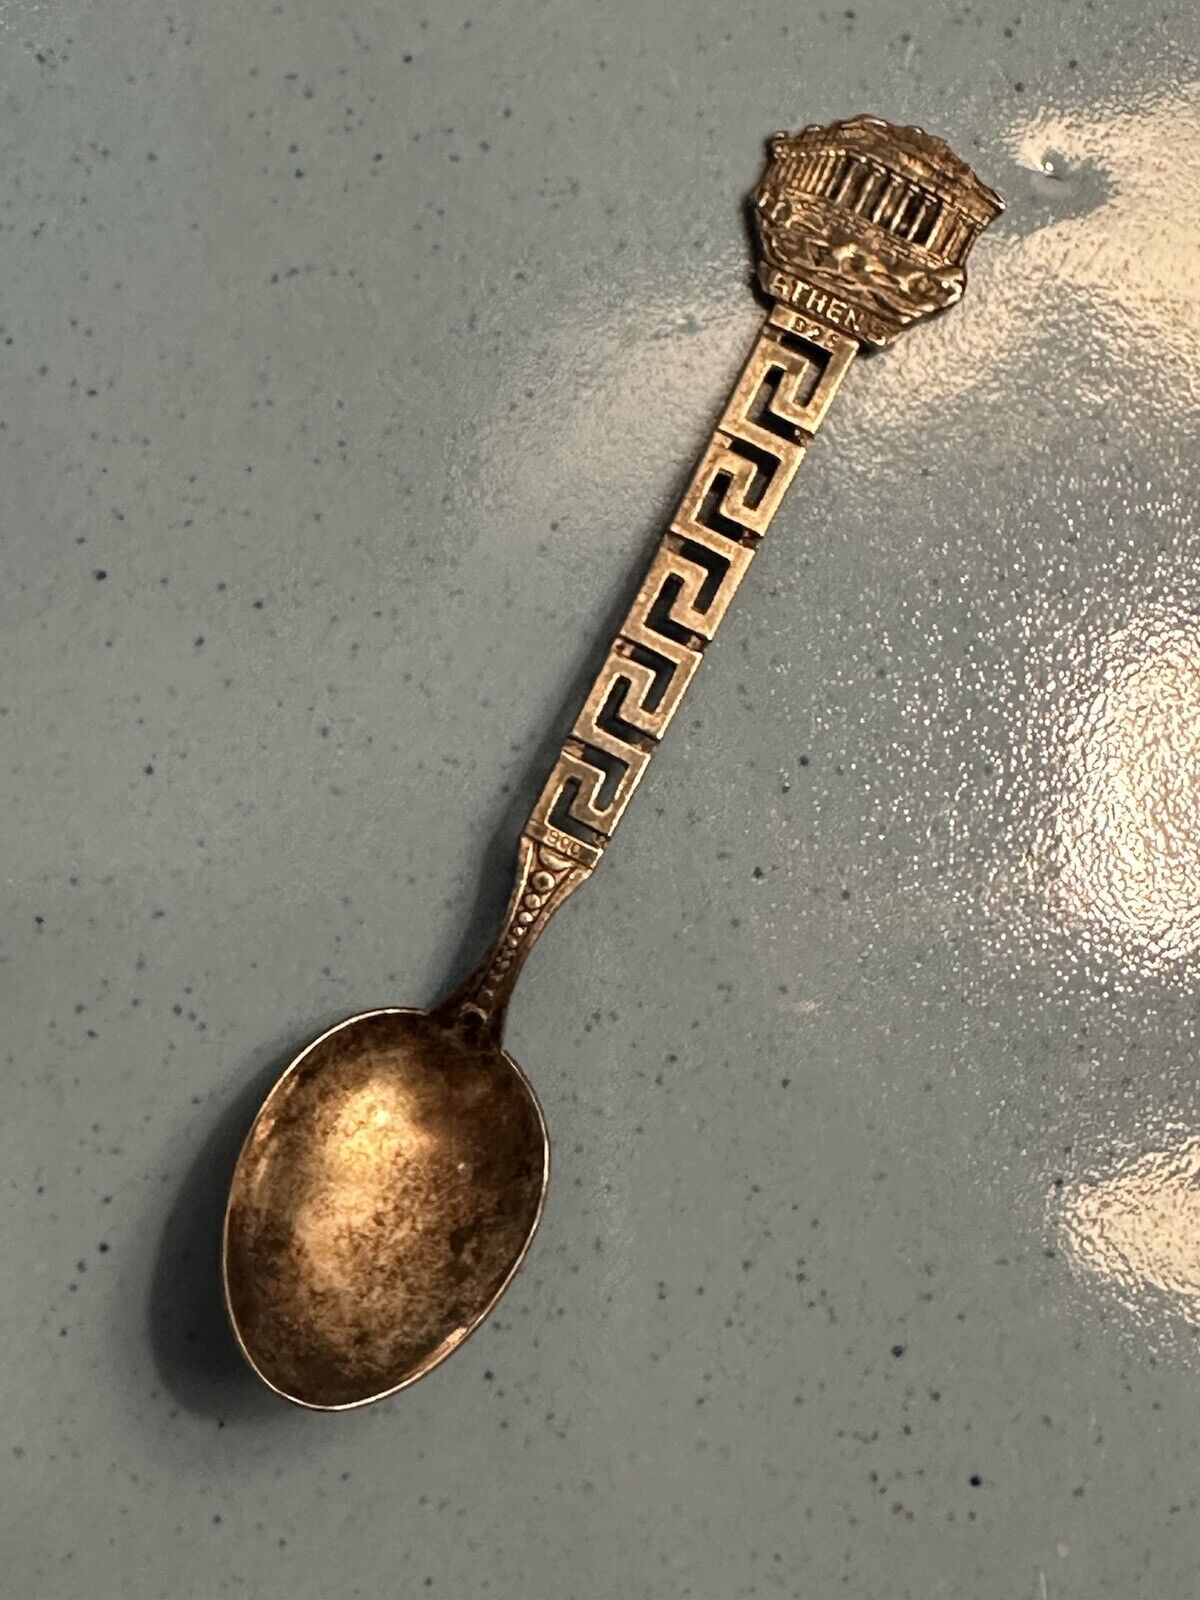 Vintage Athens Greece Souvenir Spoon Collectible Athena Greek Key